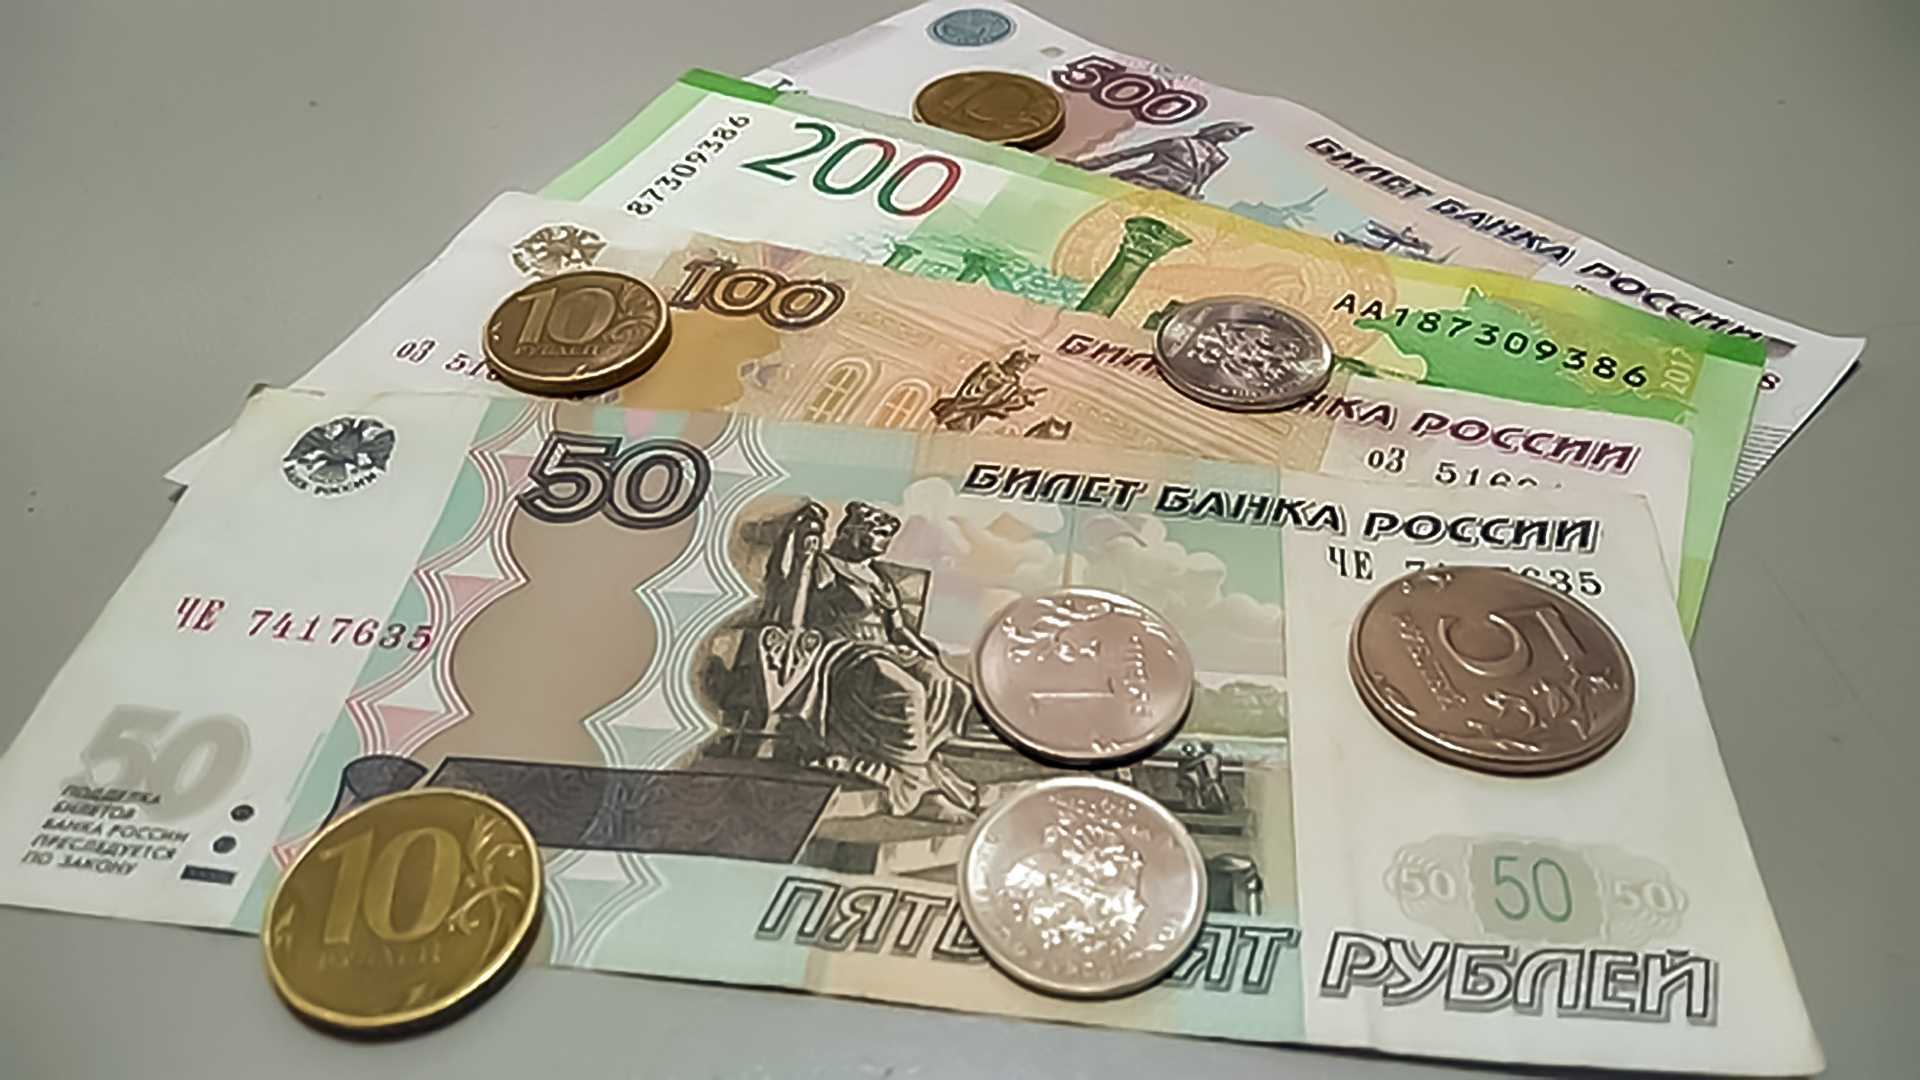 500 Рублей льготы. Перевёл 100 руб мошеннику.